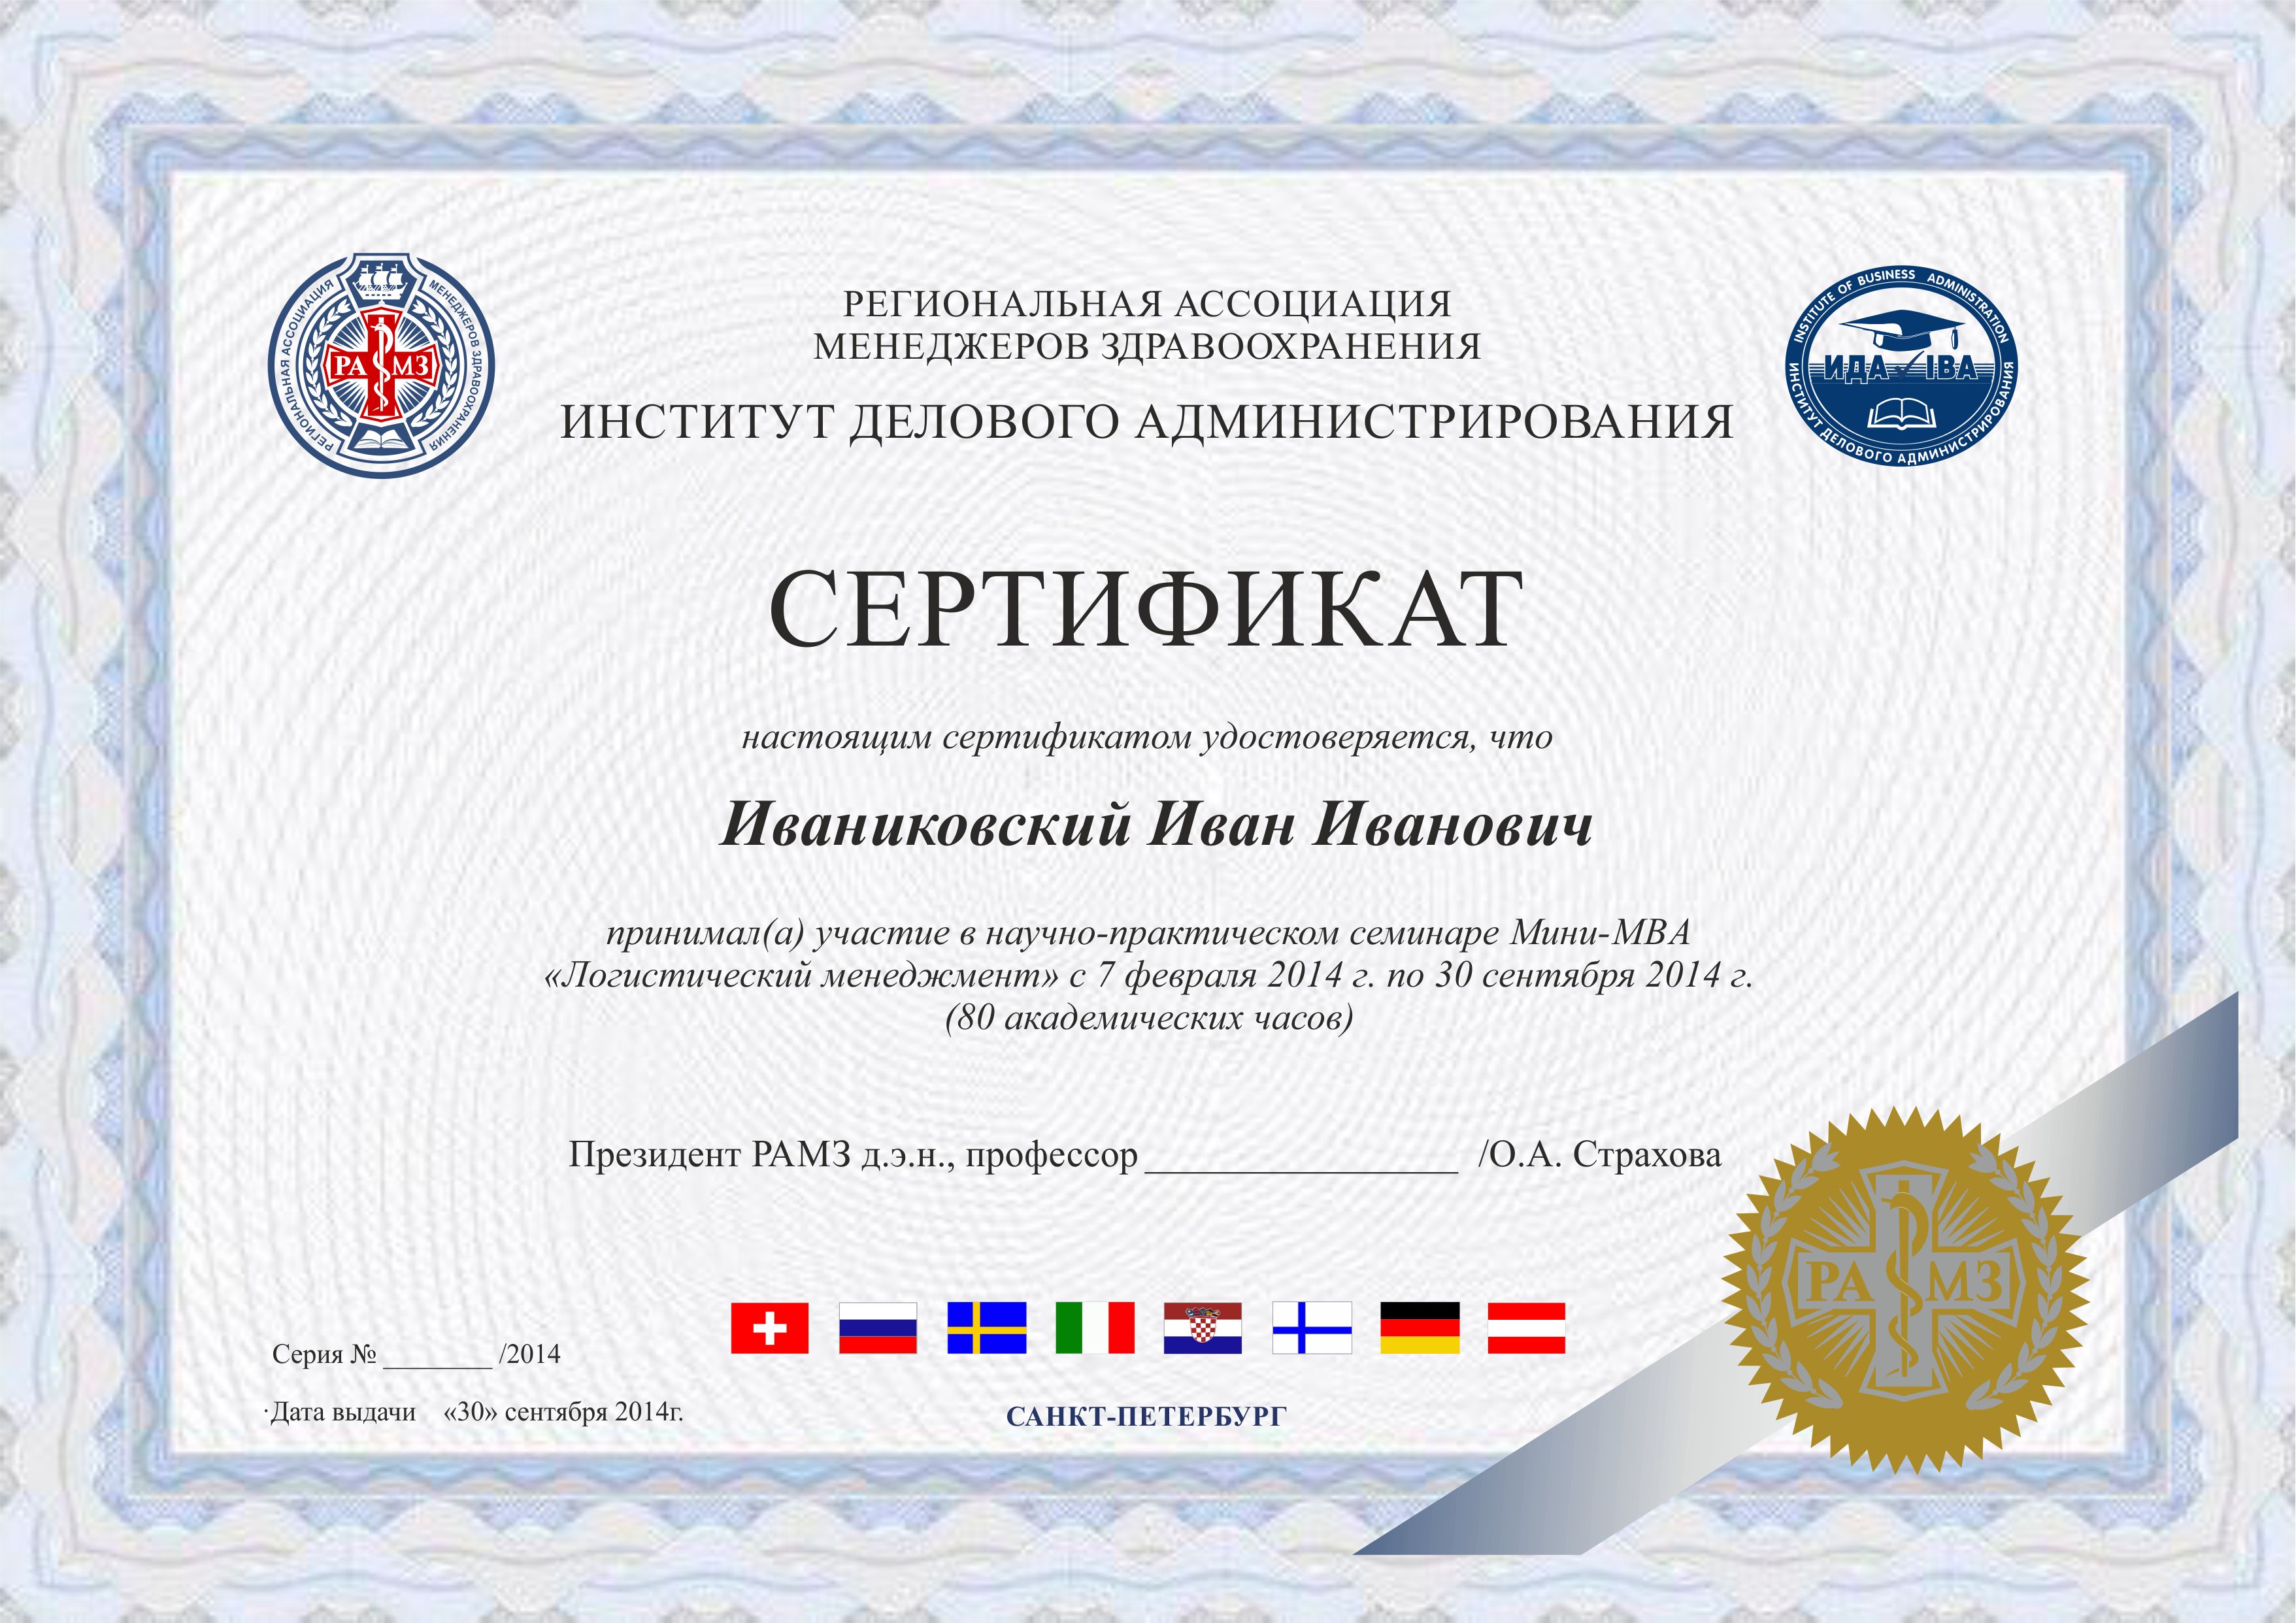 Сертификат учебного заведения